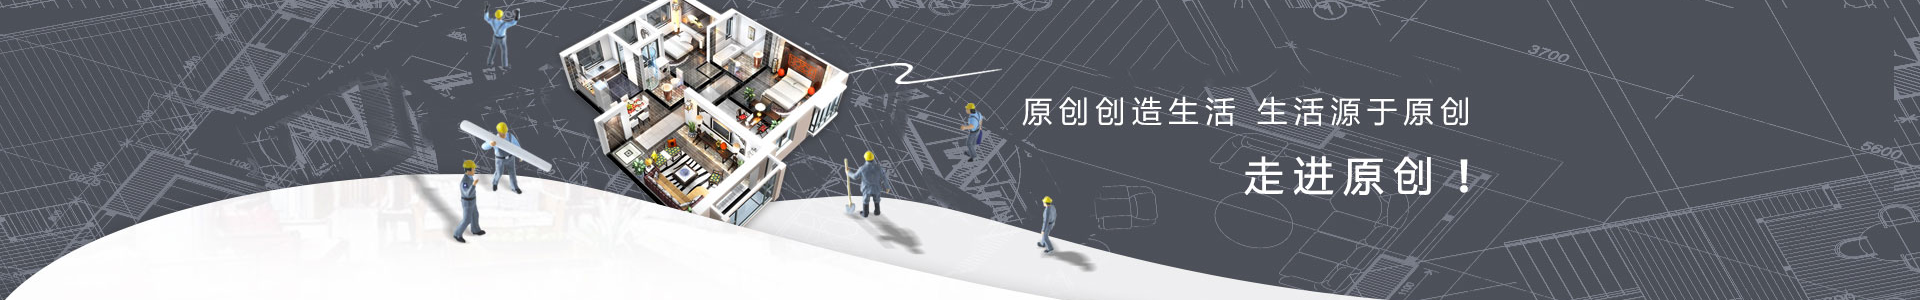 智能化工程中对线缆的标签的管理必不可少_常见问题_广东住总建设工程有限公司